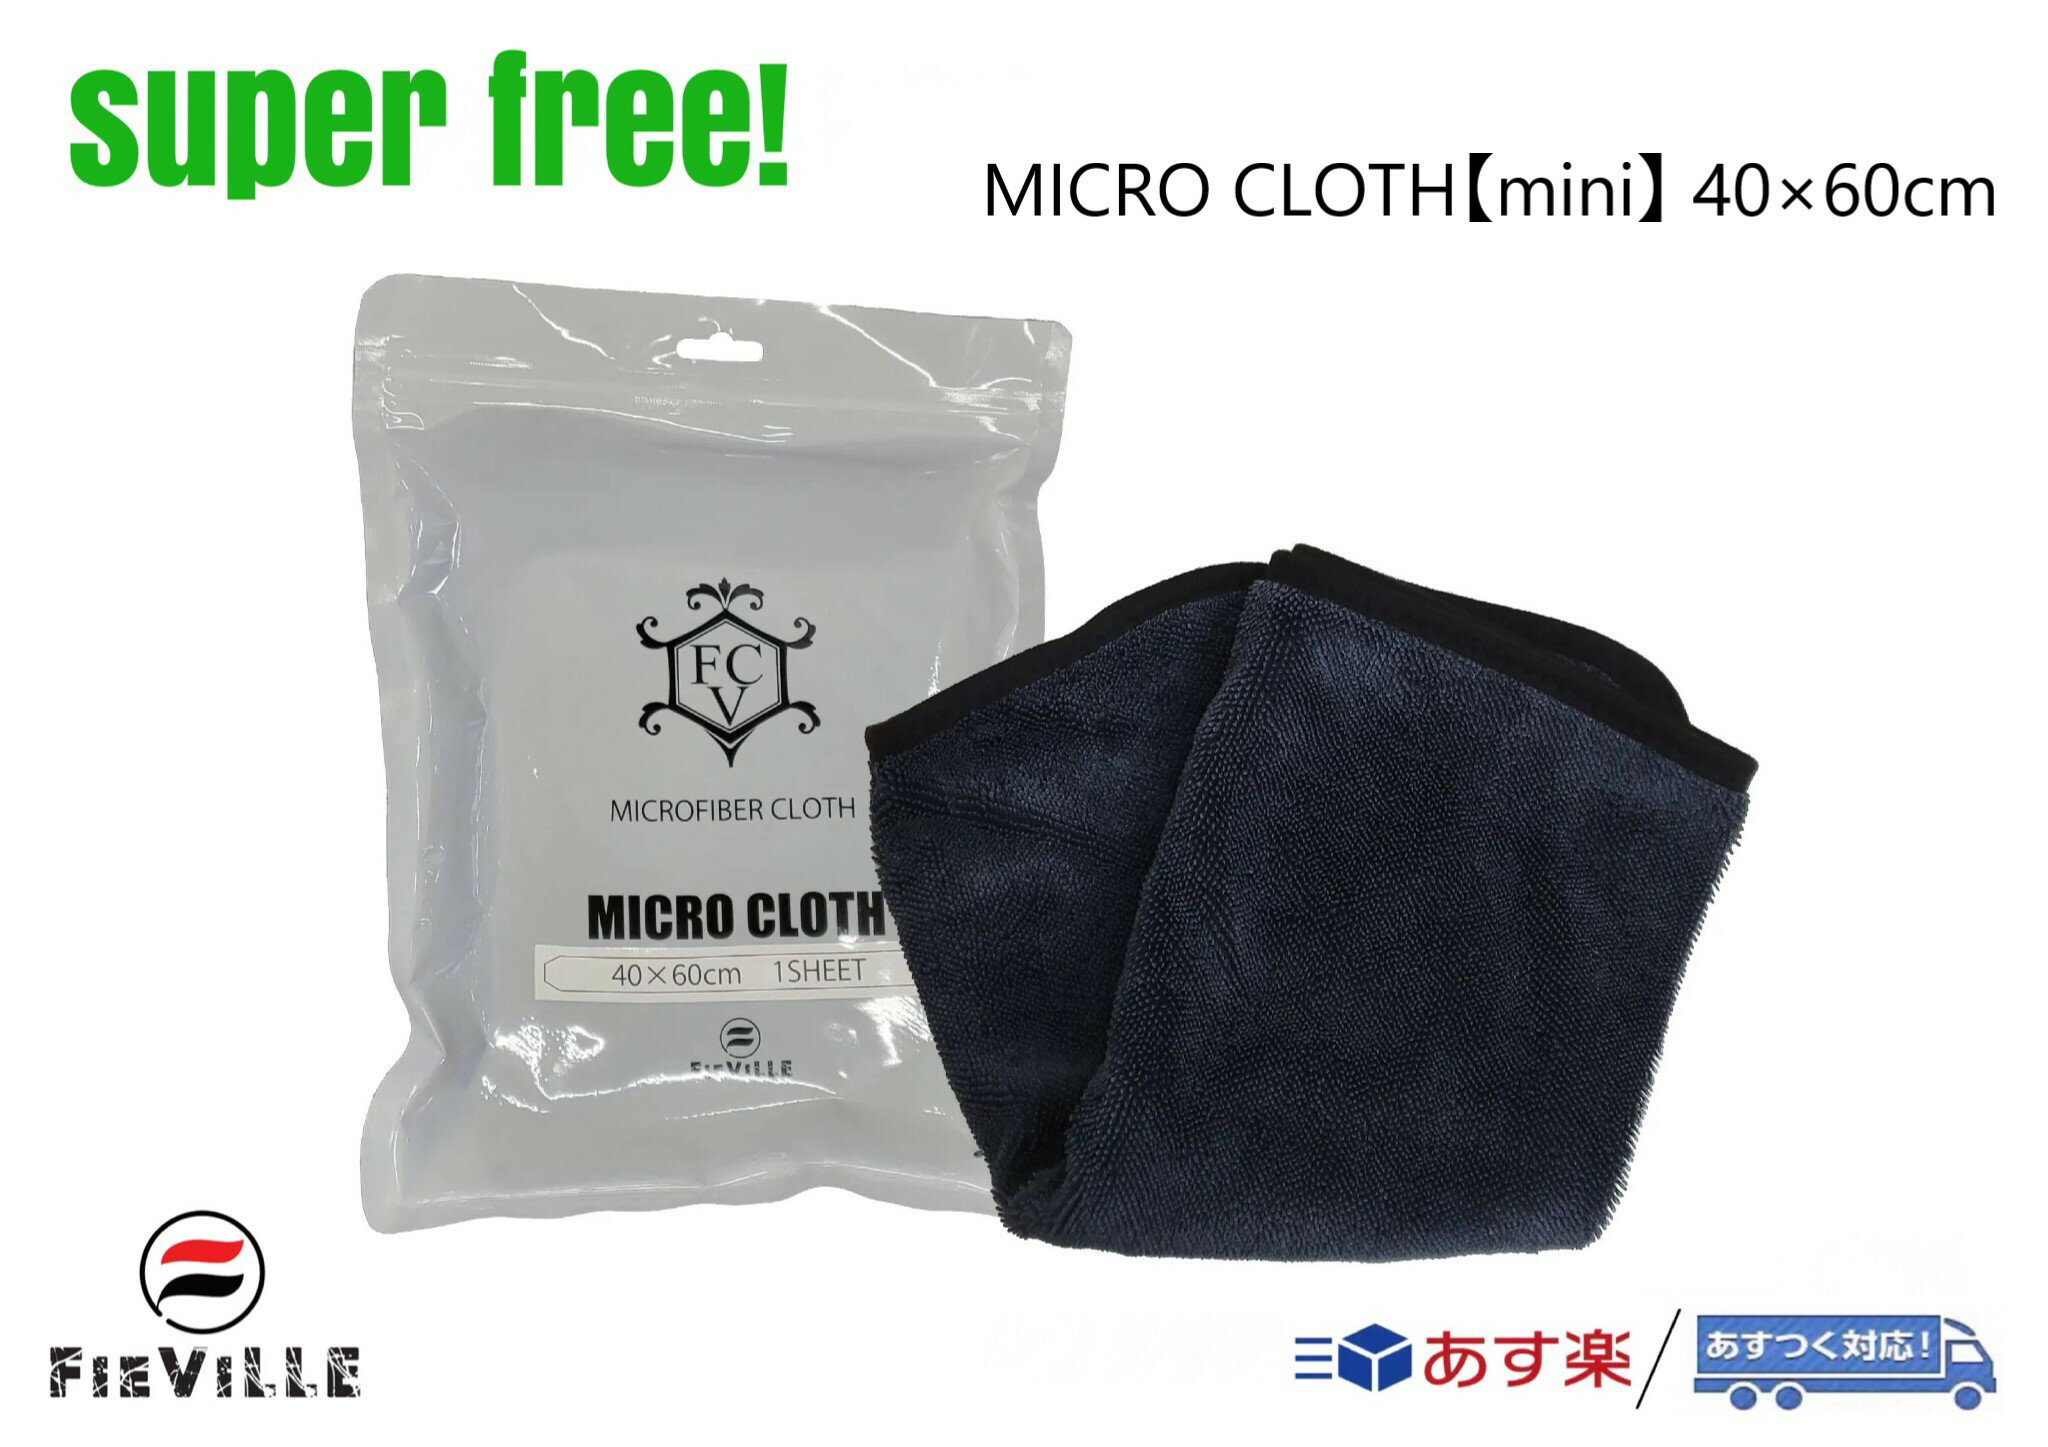 superfree! MICRO CLOTH【Mini】 40×60cm マイクロクロス ミニ 超吸水 タオル 洗車 カーケア フィールドビレッジ FIEVILLE